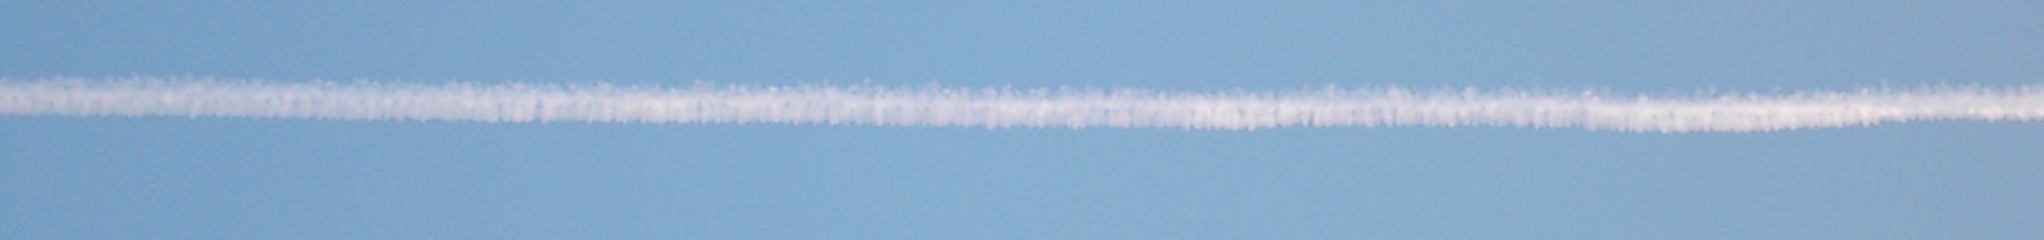 12.08.2004: 06 Uhr 52-26: In den Wolkenlcken werden die dunklen Massepunkte deutlicher sichtbar; sie begrenzen den Wolkenstreifen nach auen. 